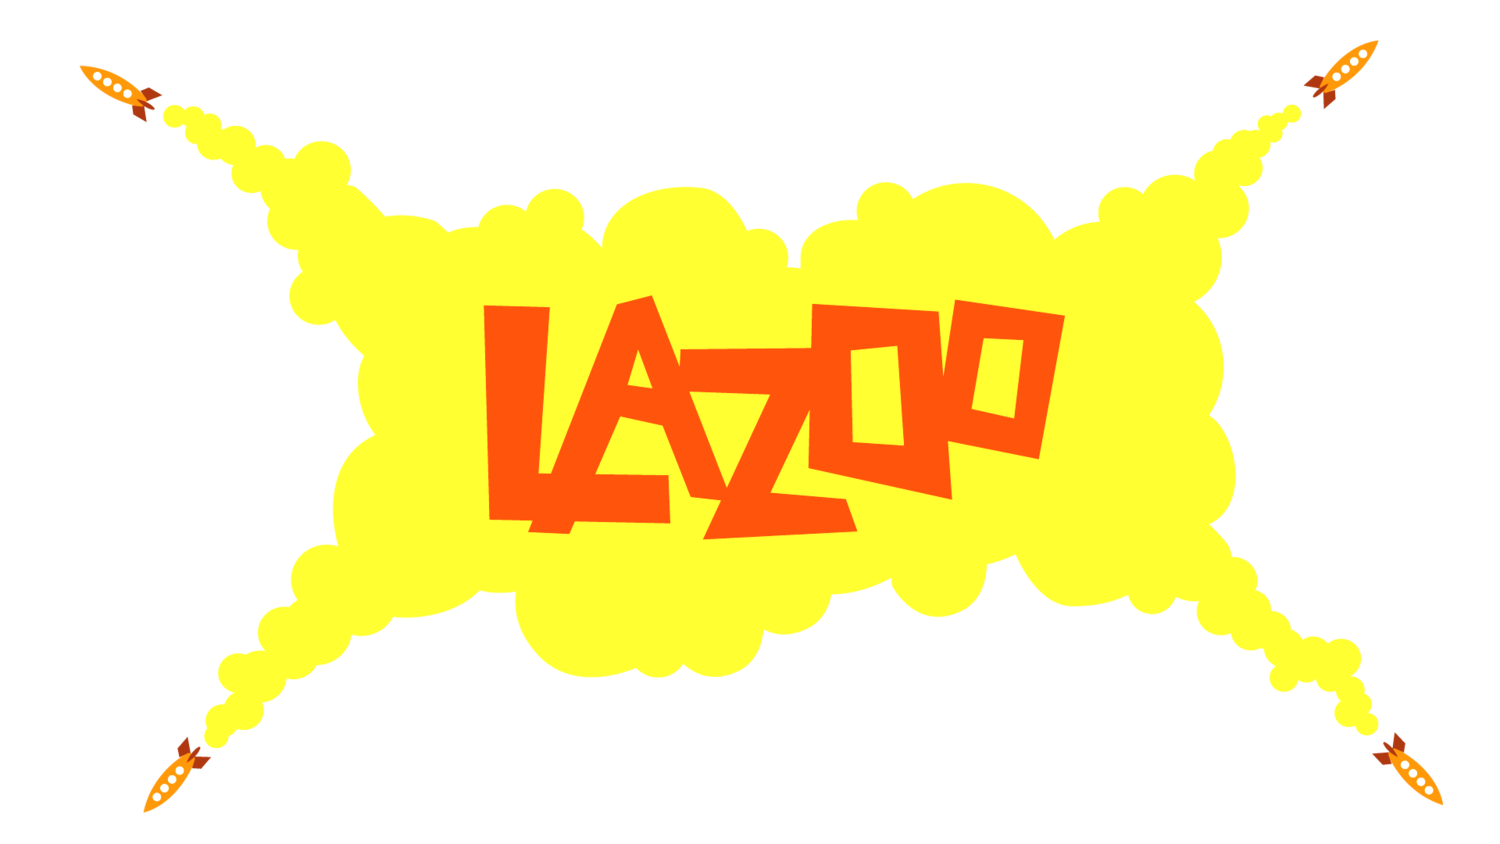 Lazoo